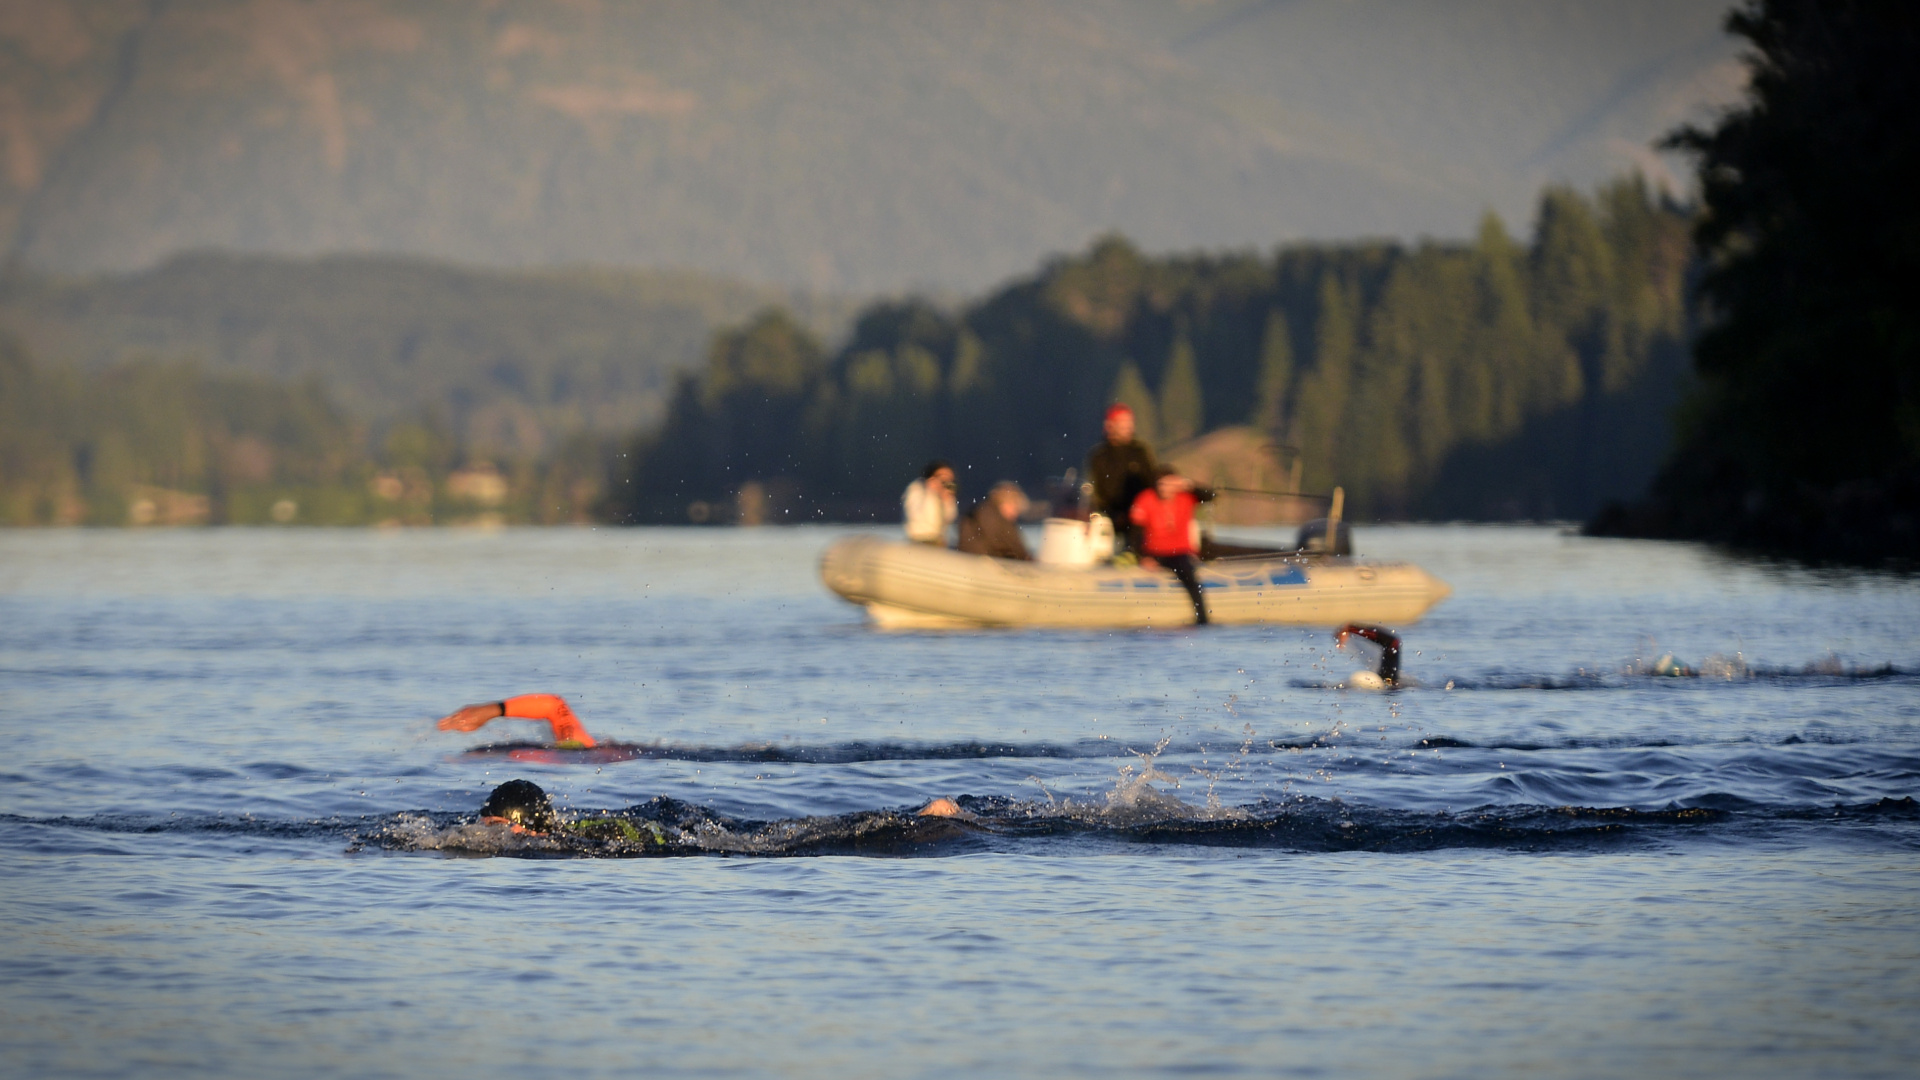 En el segmento de natación los competidores son acompañados por botes con especialistas de rescate (Gustavo Gavotti)